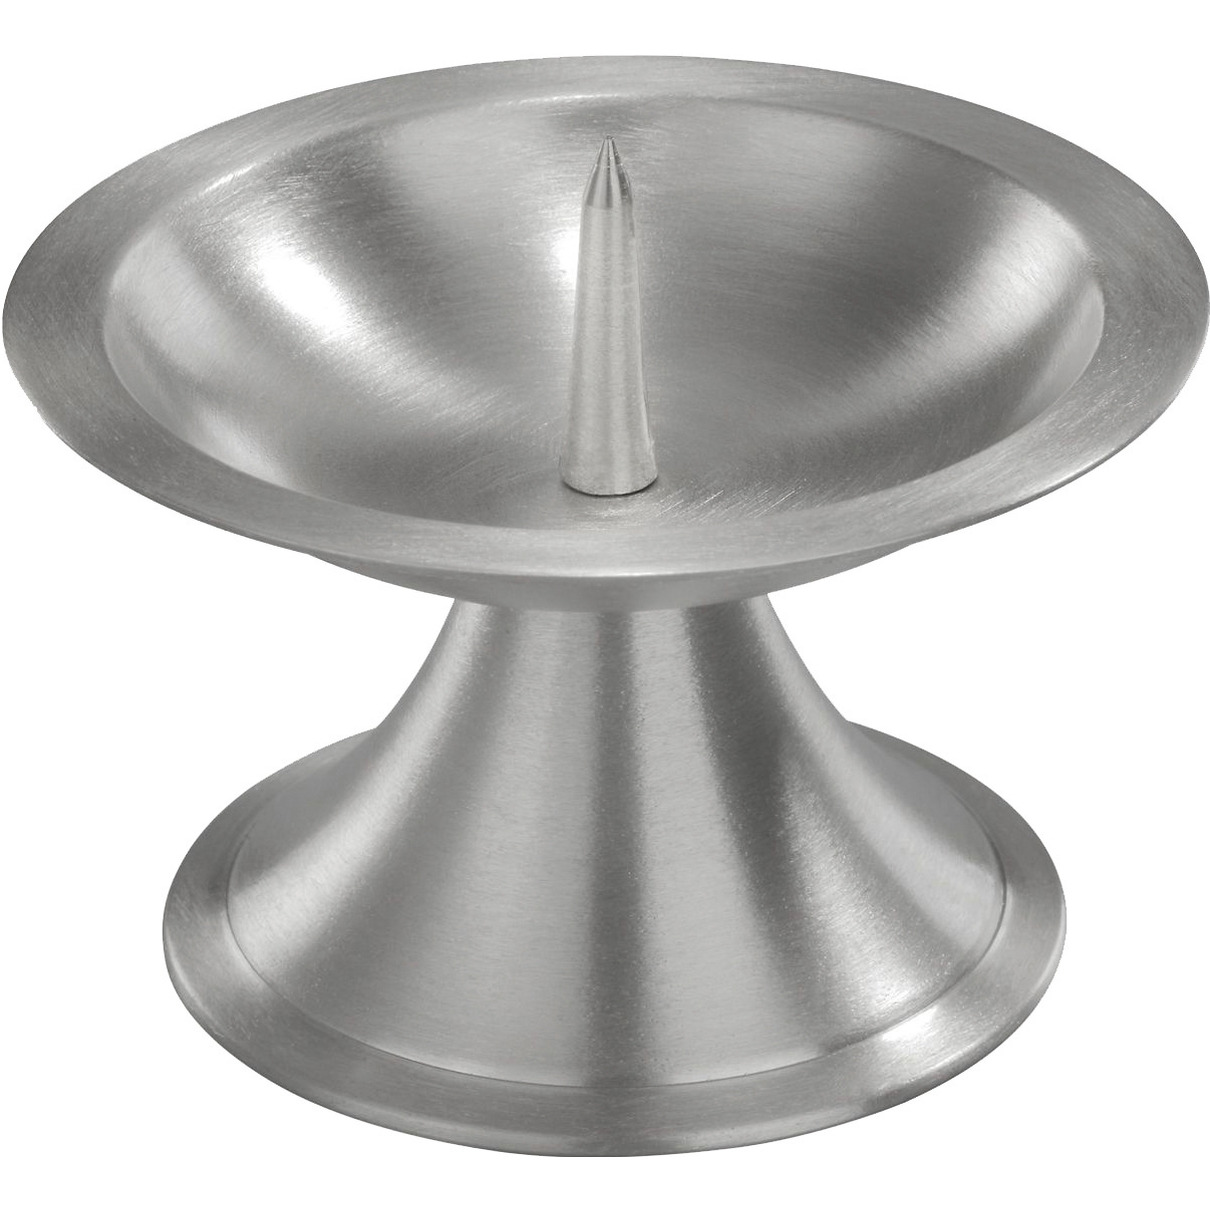 1x Kaarsenhouder zilver rond metaal voor stompkaarsen 7-8 cm